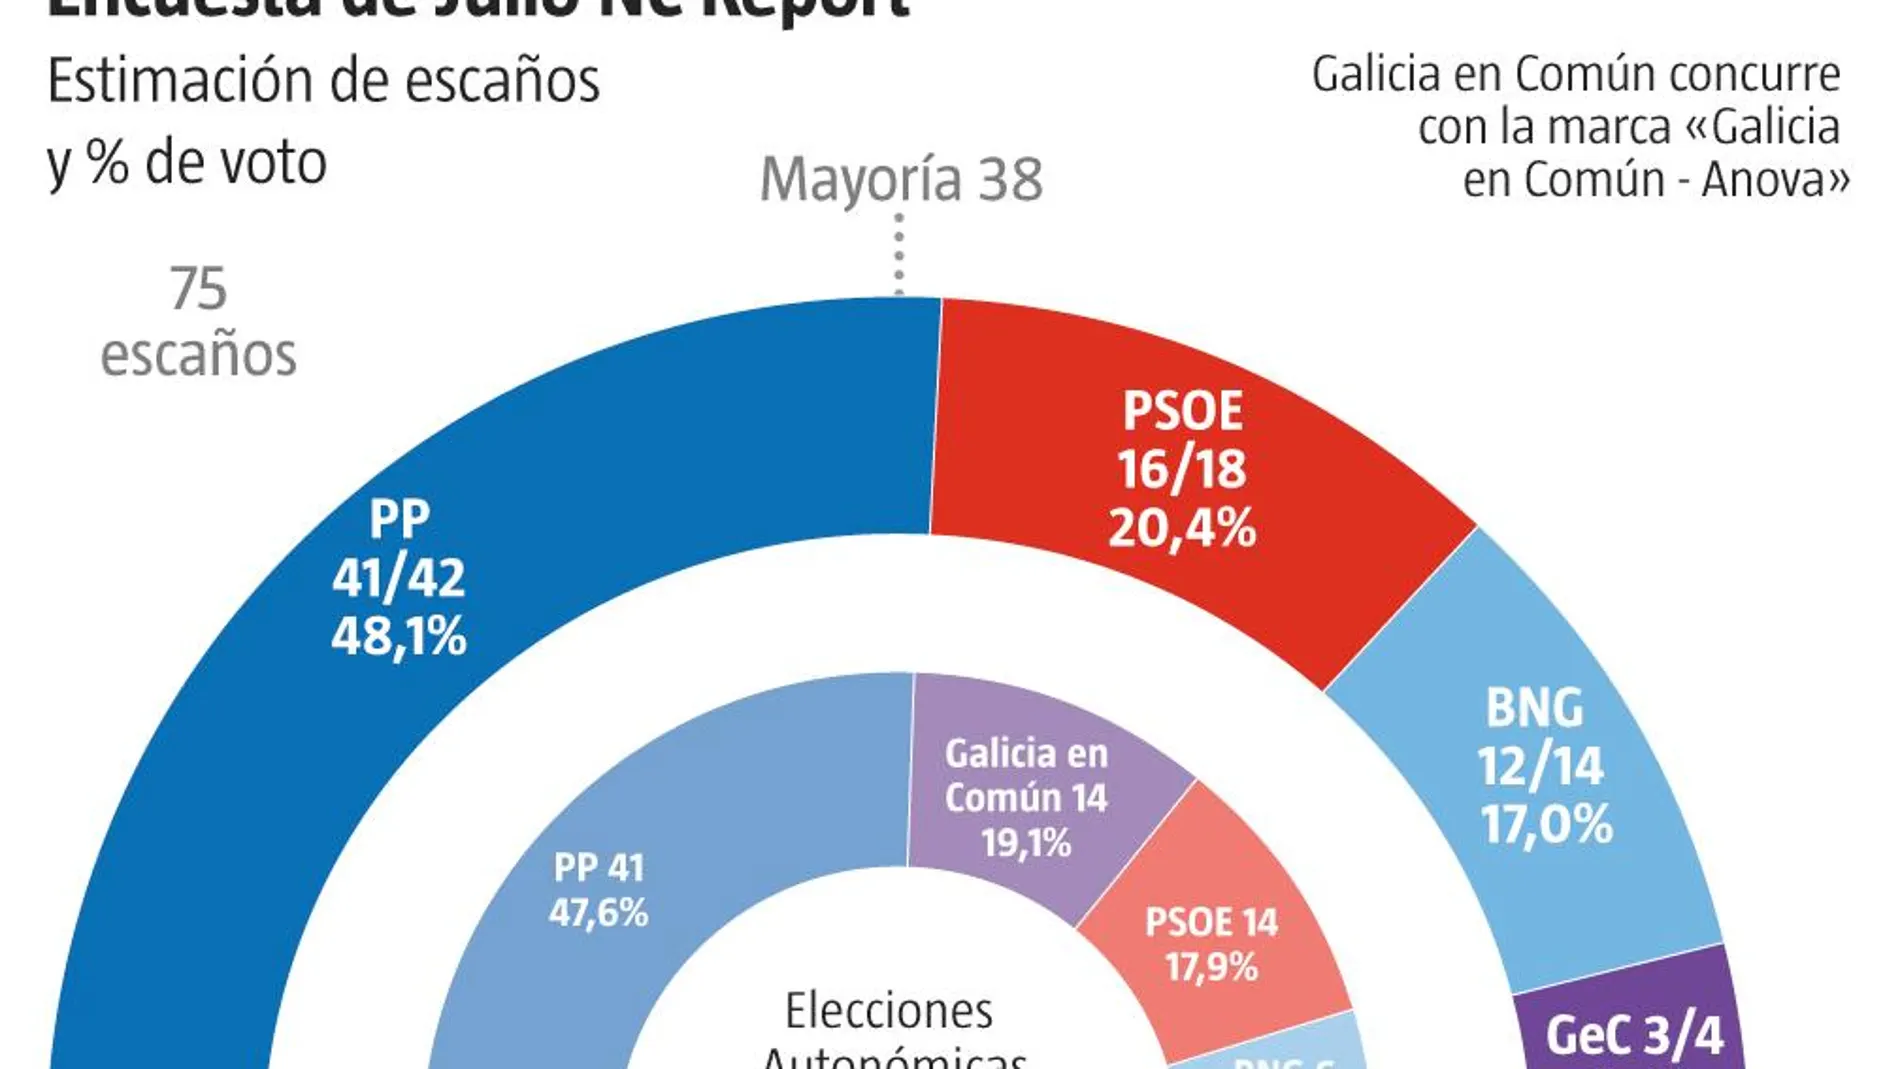 Encuesta Galicia julio 2020 NC Report